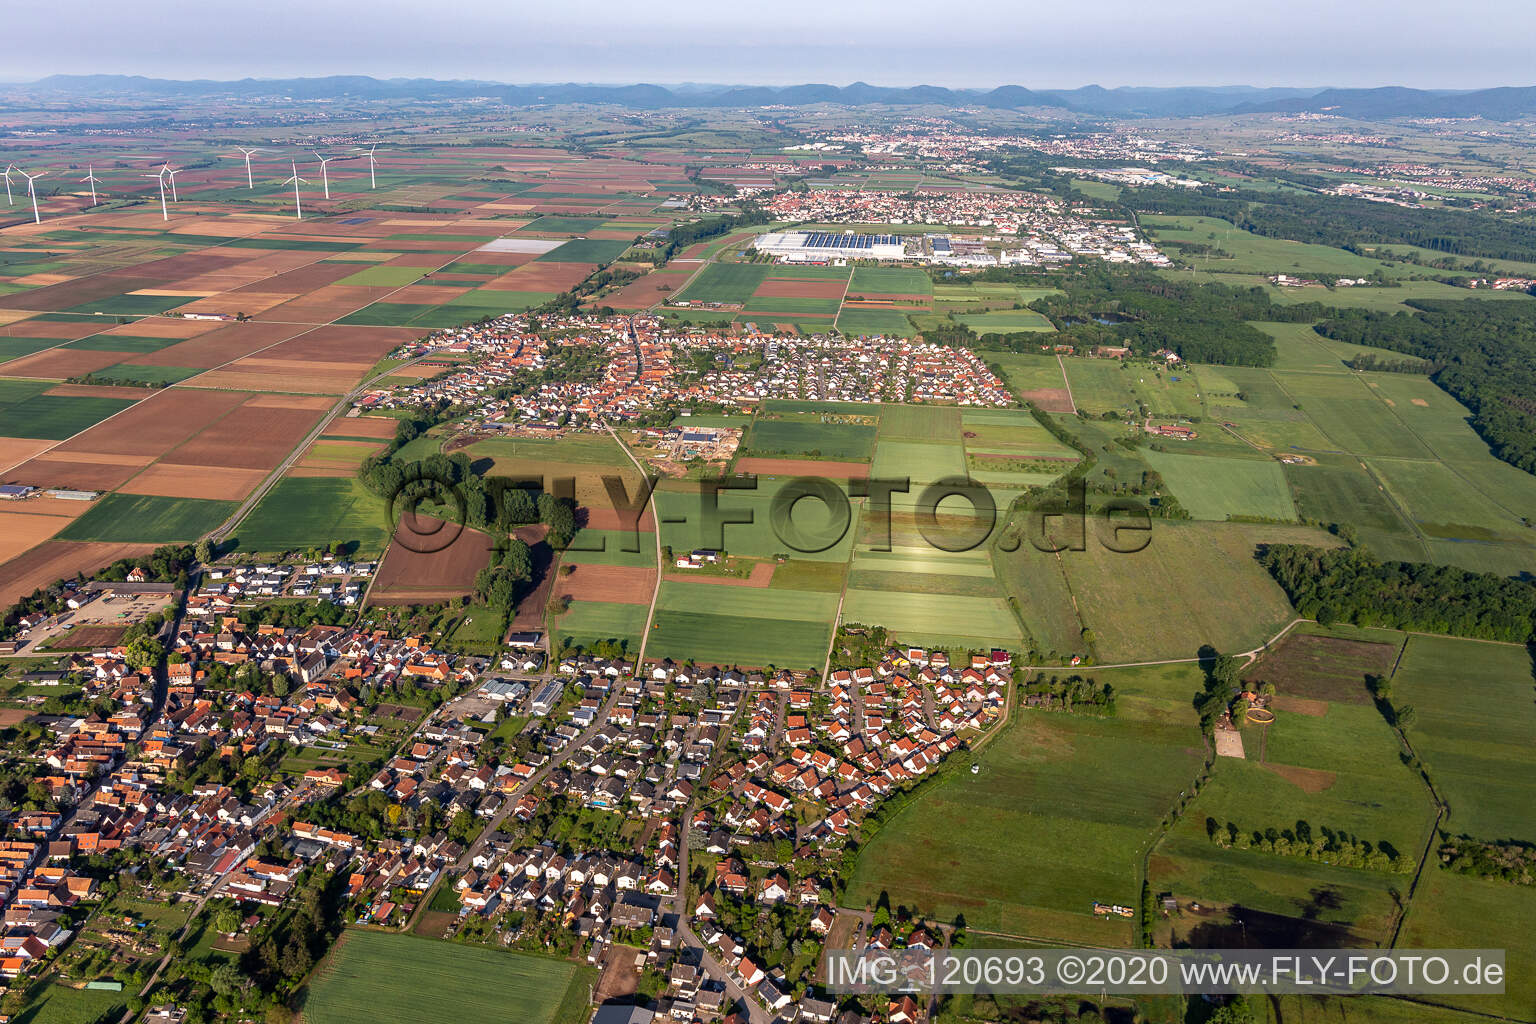 Vue aérienne de Vue de la ville de Knittelheim, Ottersheim près de Landau et Offenbach an der Queich à Knittelsheim dans le département Rhénanie-Palatinat, Allemagne